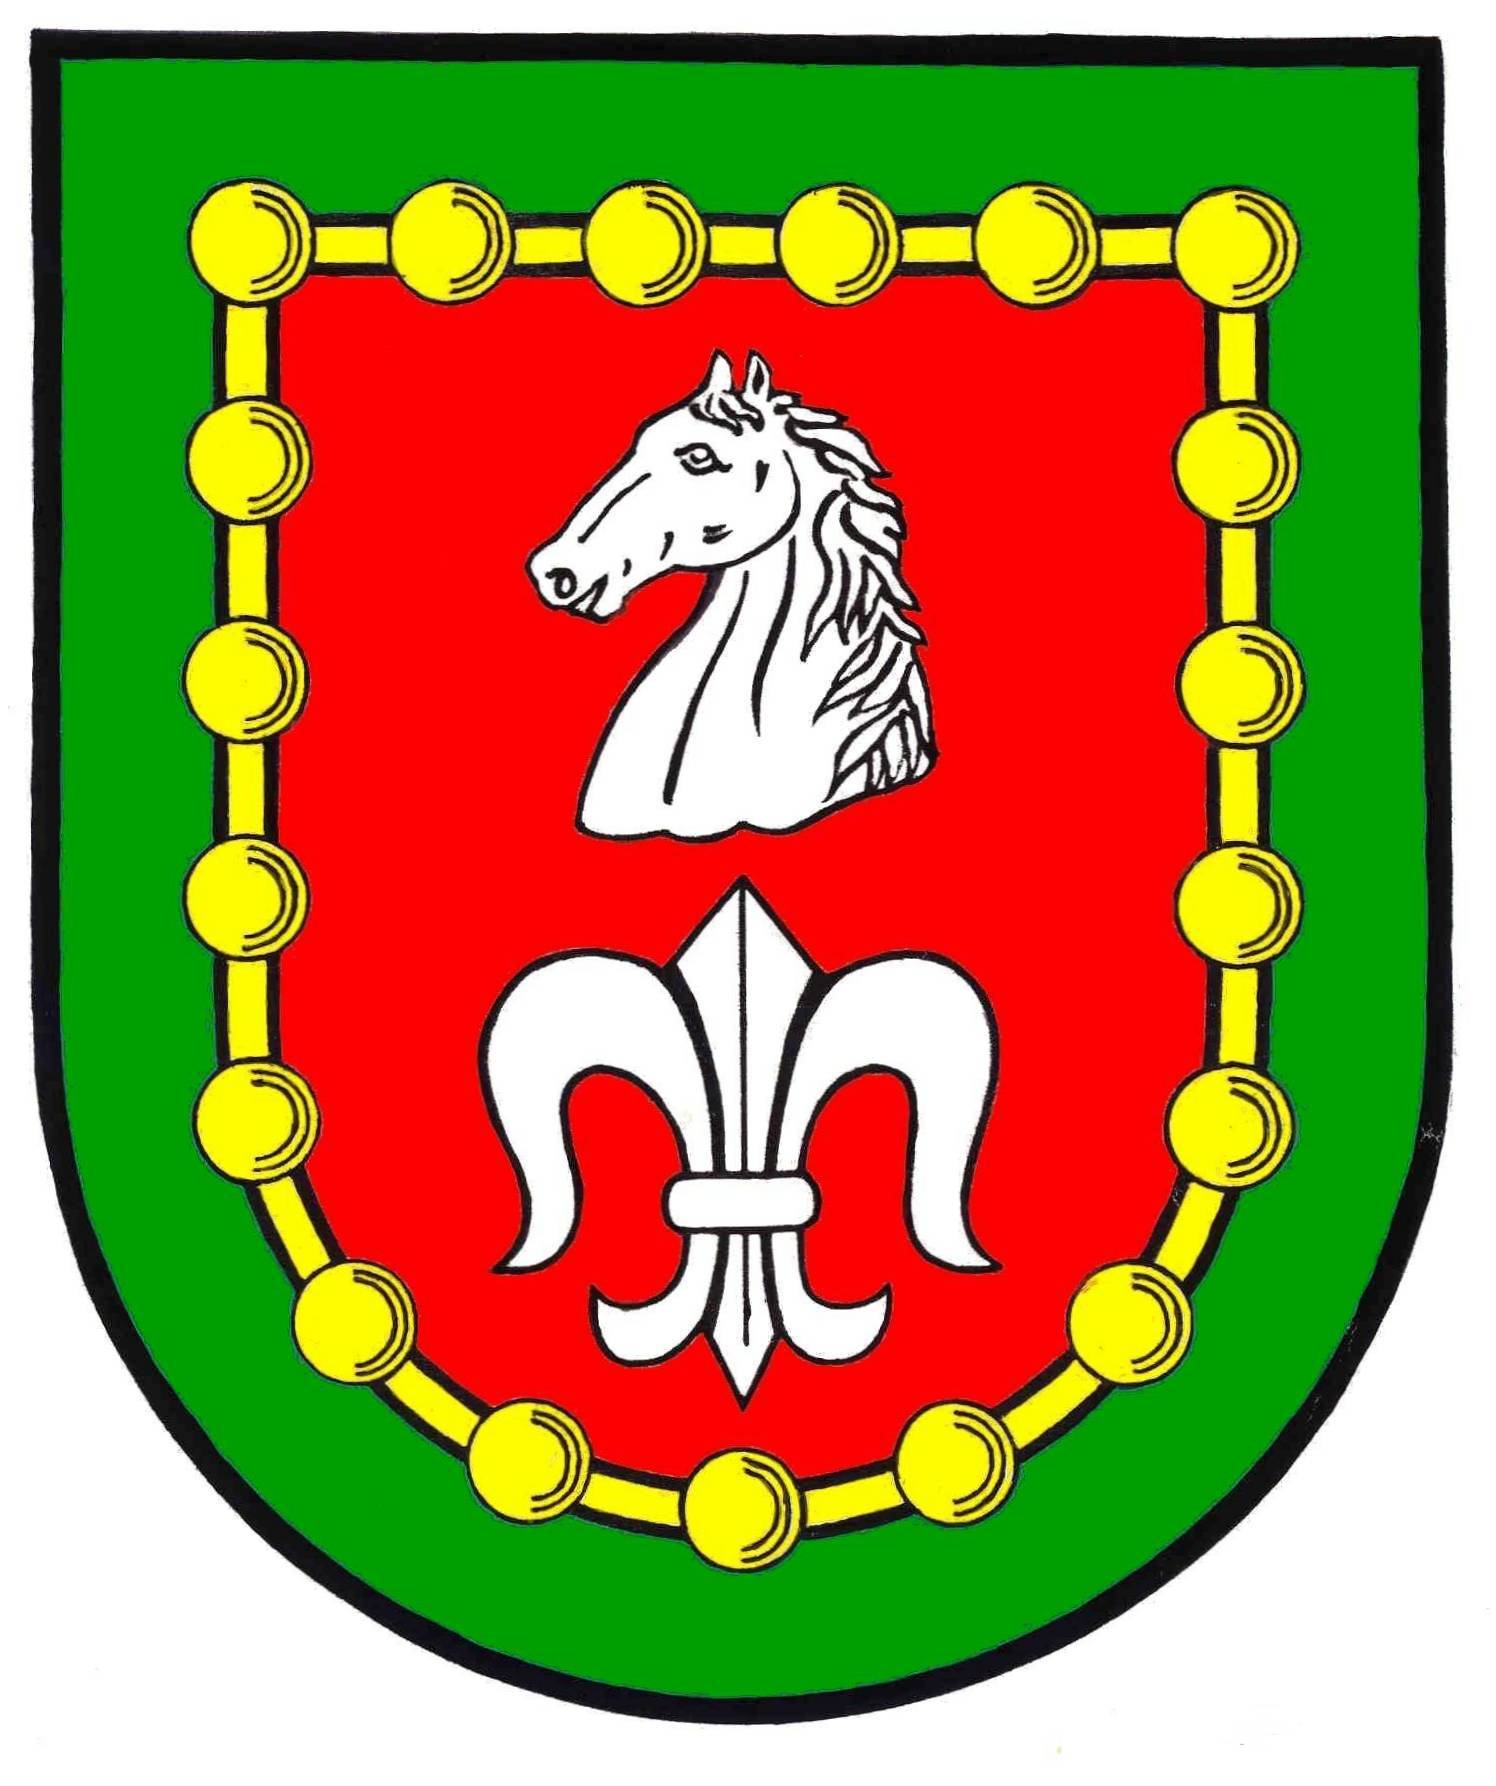 Wappen Amt Schwarzenbek-Land, Kreis Herzogtum Lauenburg